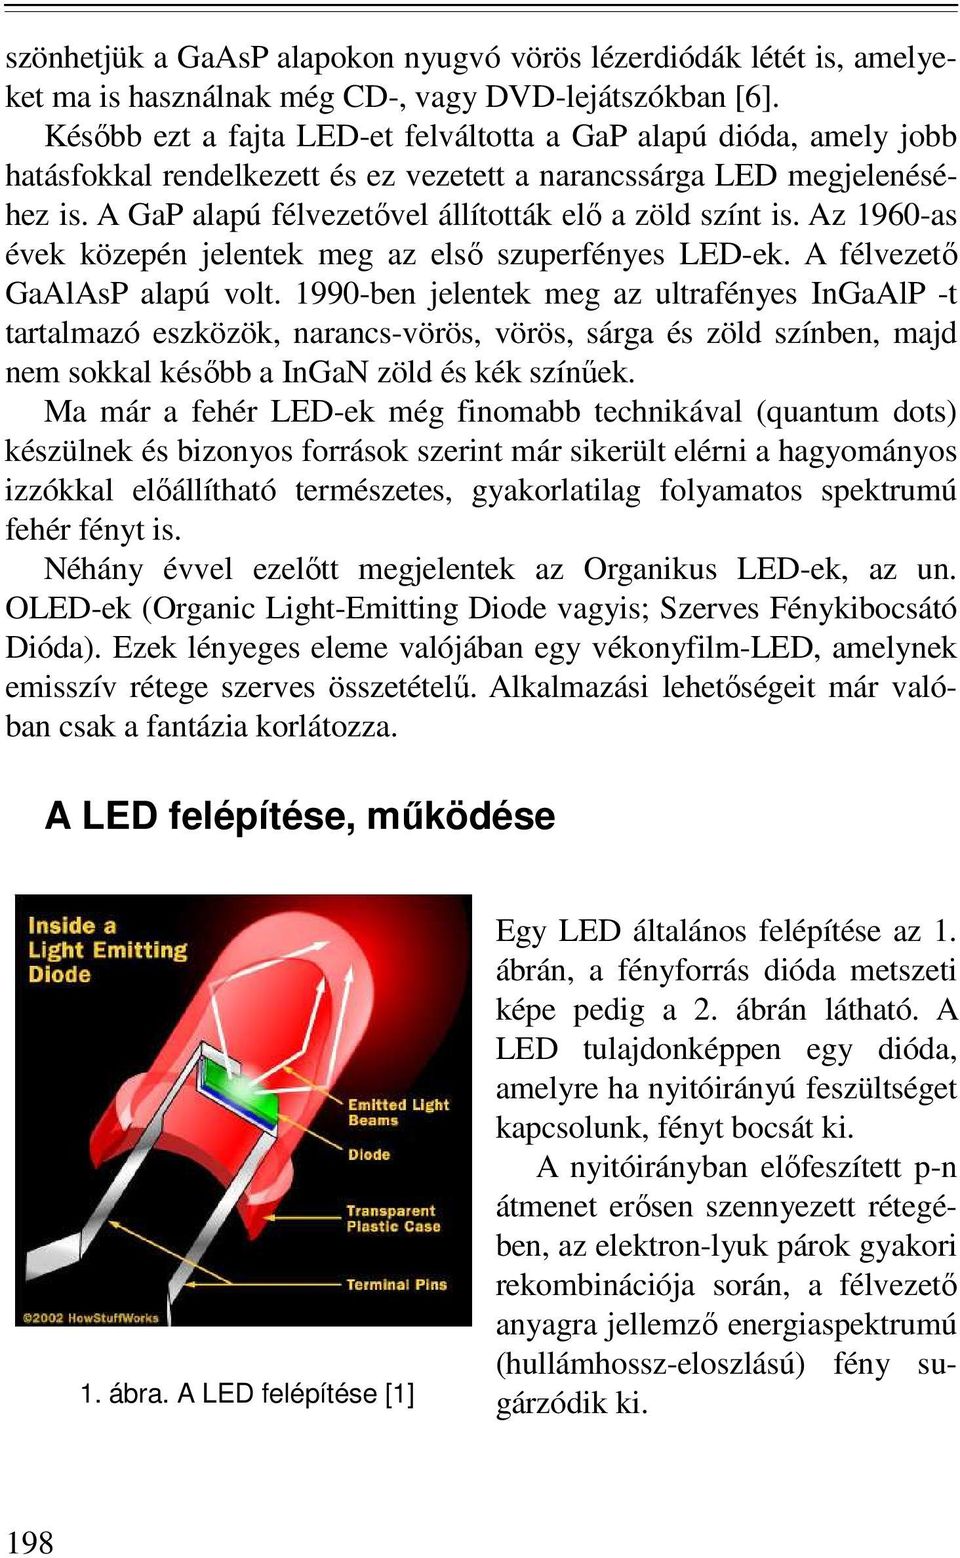 RÖVIDEN ÉS TÖMÖREN A LED-EKRİL BRIEFLY ABOUT LEDS. LED (Light Emitting  Diode), fénykibocsátó dióda DR. VERES GYÖRGY. Bevezetı - PDF Free Download